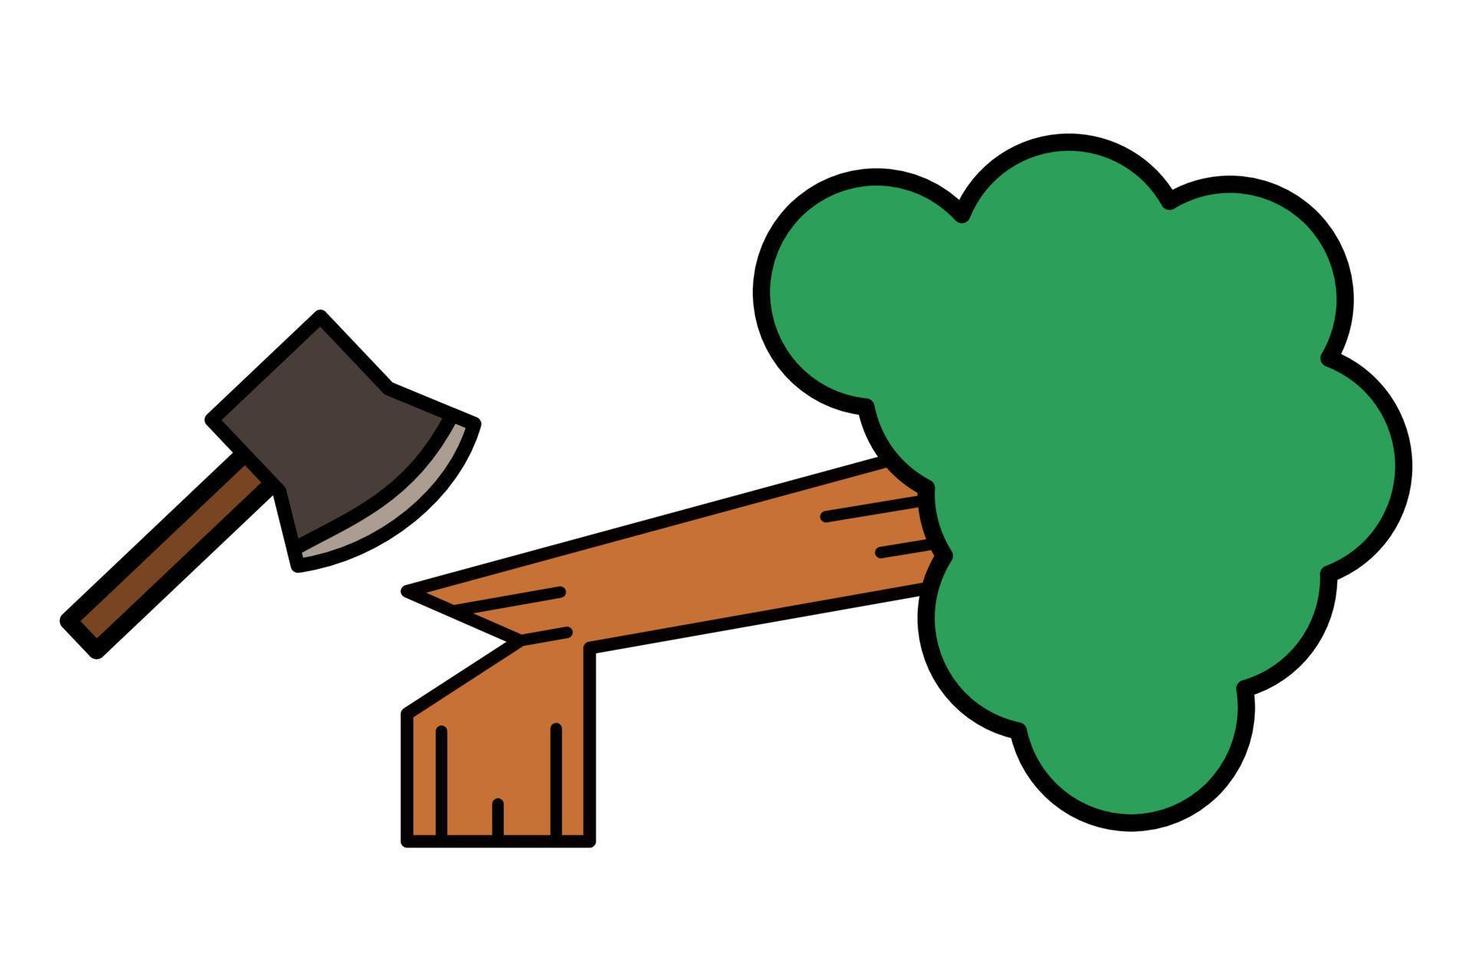 desmatamento de árvore cheio ícone com símbolo de machado de devastação e destruição de floresta pode ser usado para apresentação, ui, web etc. ilustração vetorial. vetor